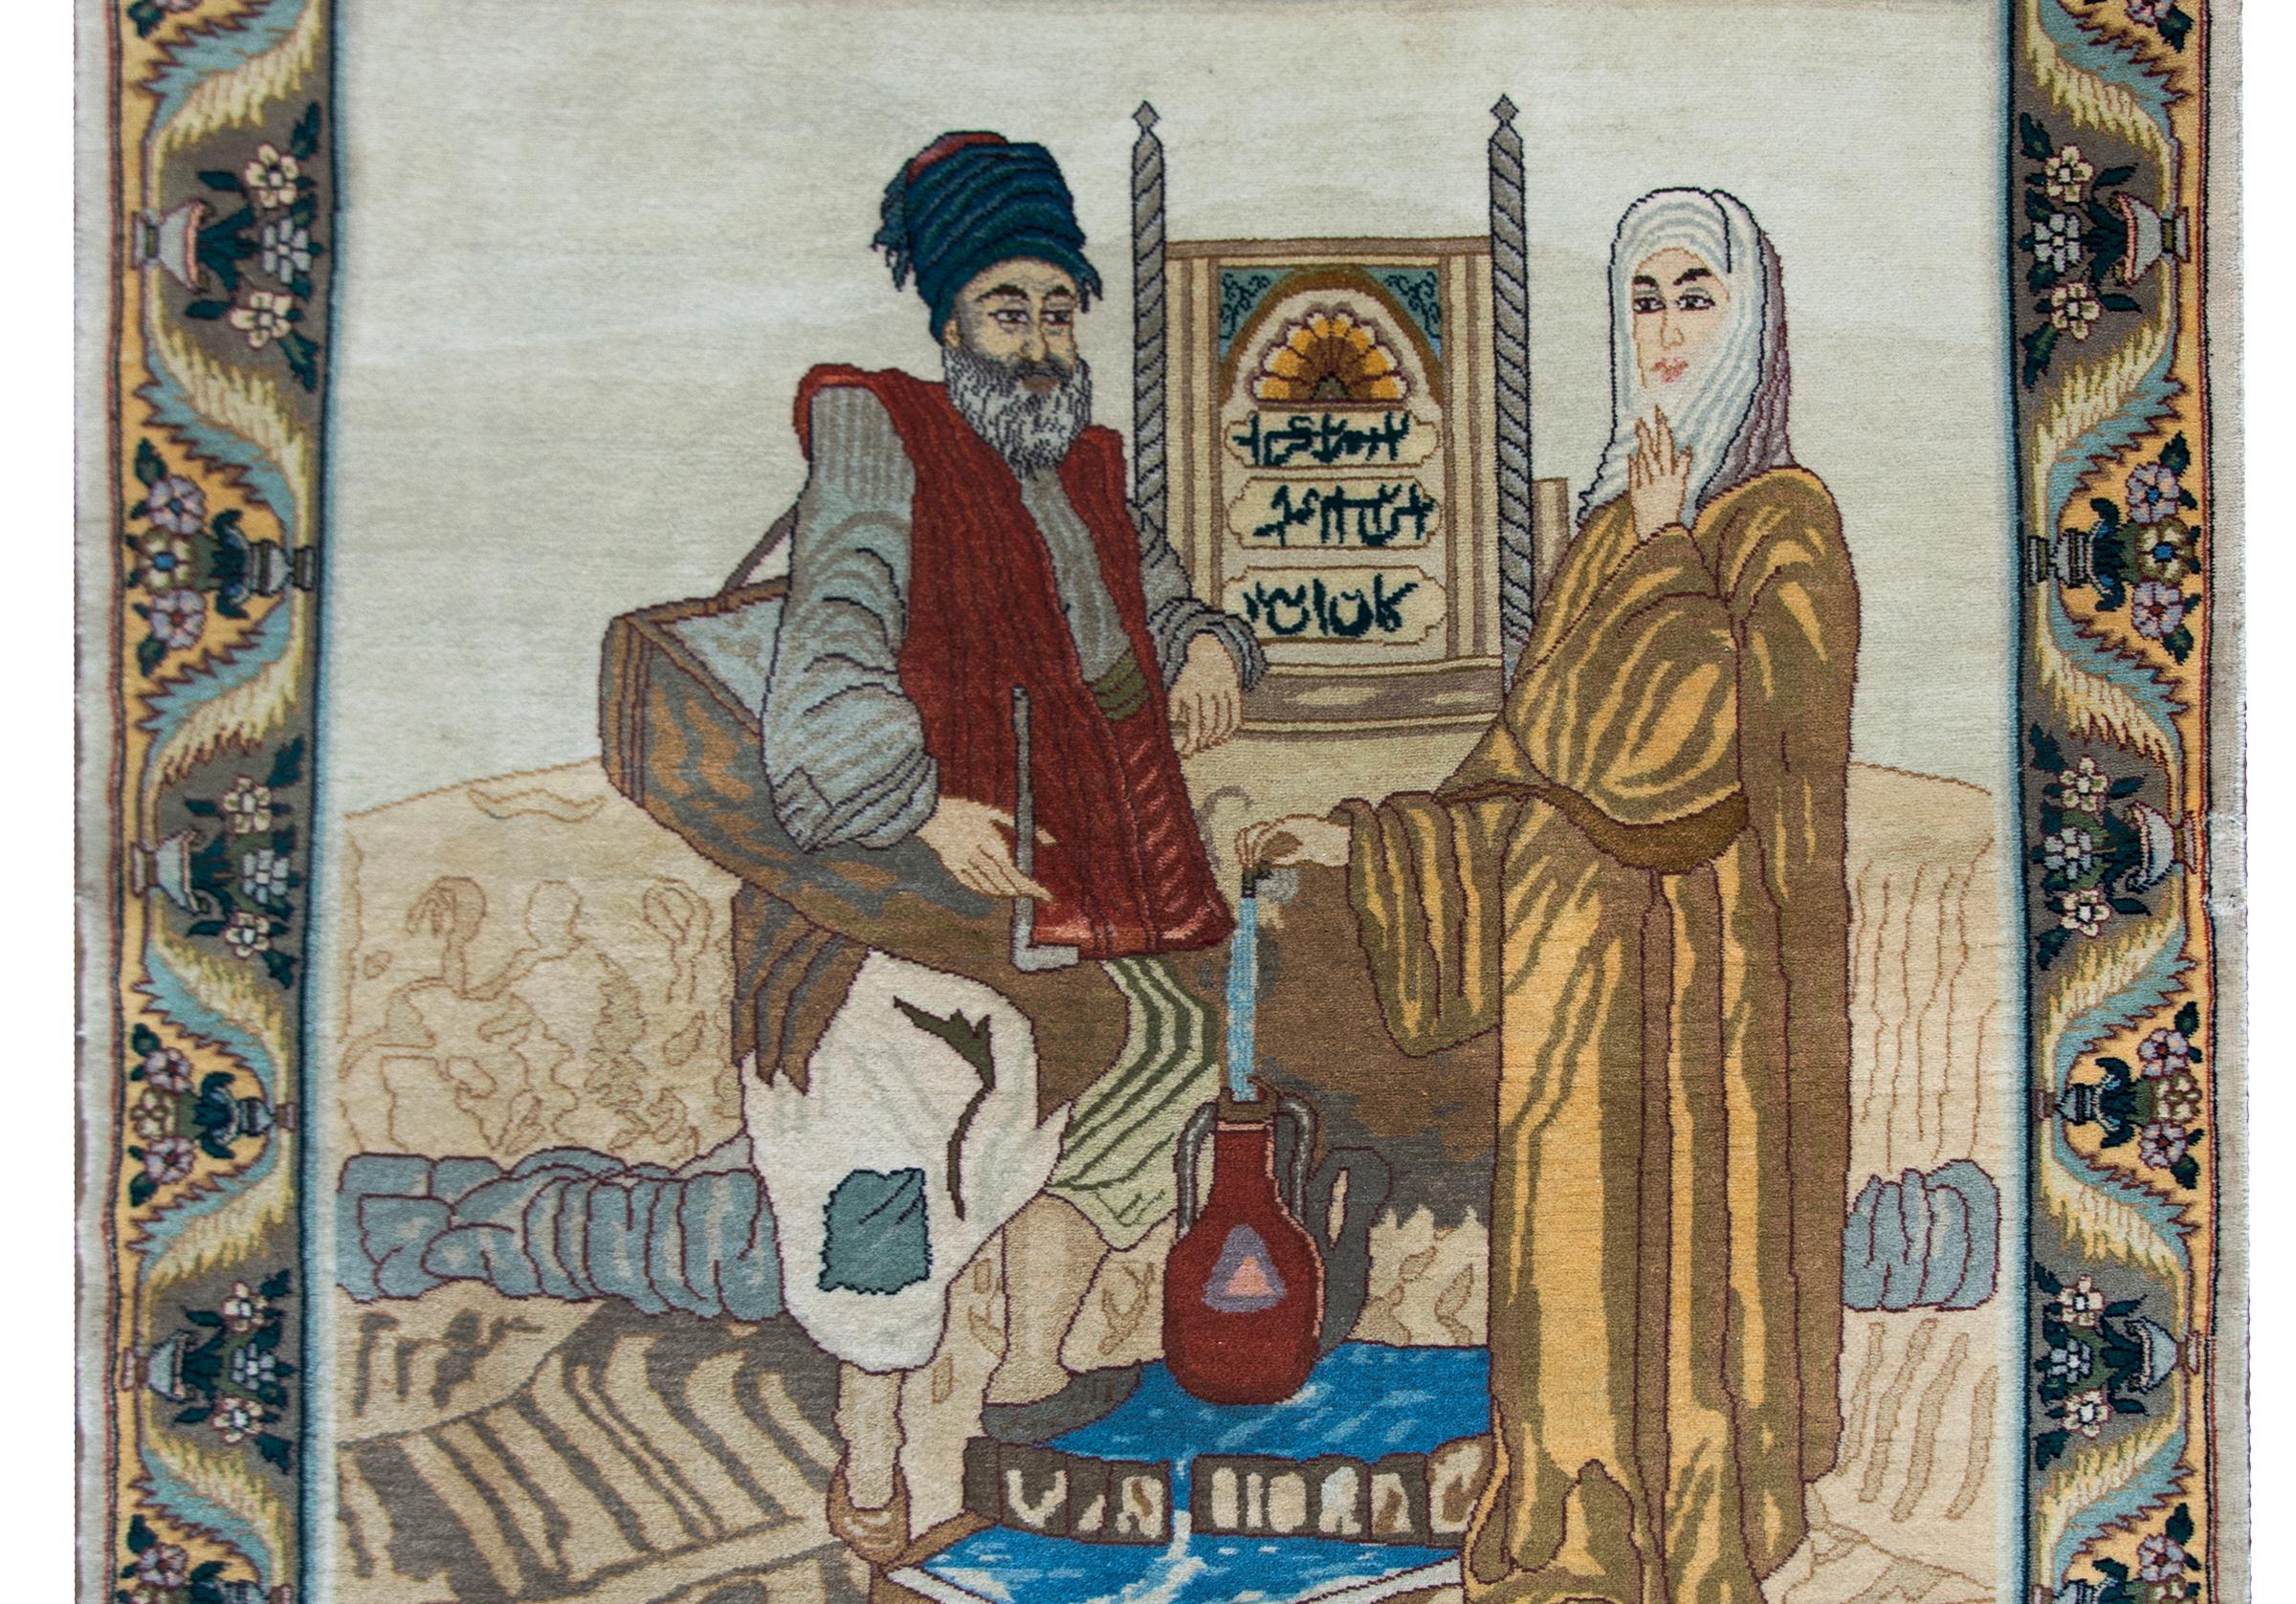 Magnifique tapis persan Tabriz de la fin du 20e siècle représentant un homme et une femme debout près d'une fontaine et remplissant un pichet d'eau, le tout tissé dans de magnifiques laines cramoisies, dorées, bleues et de diverses couleurs brunes